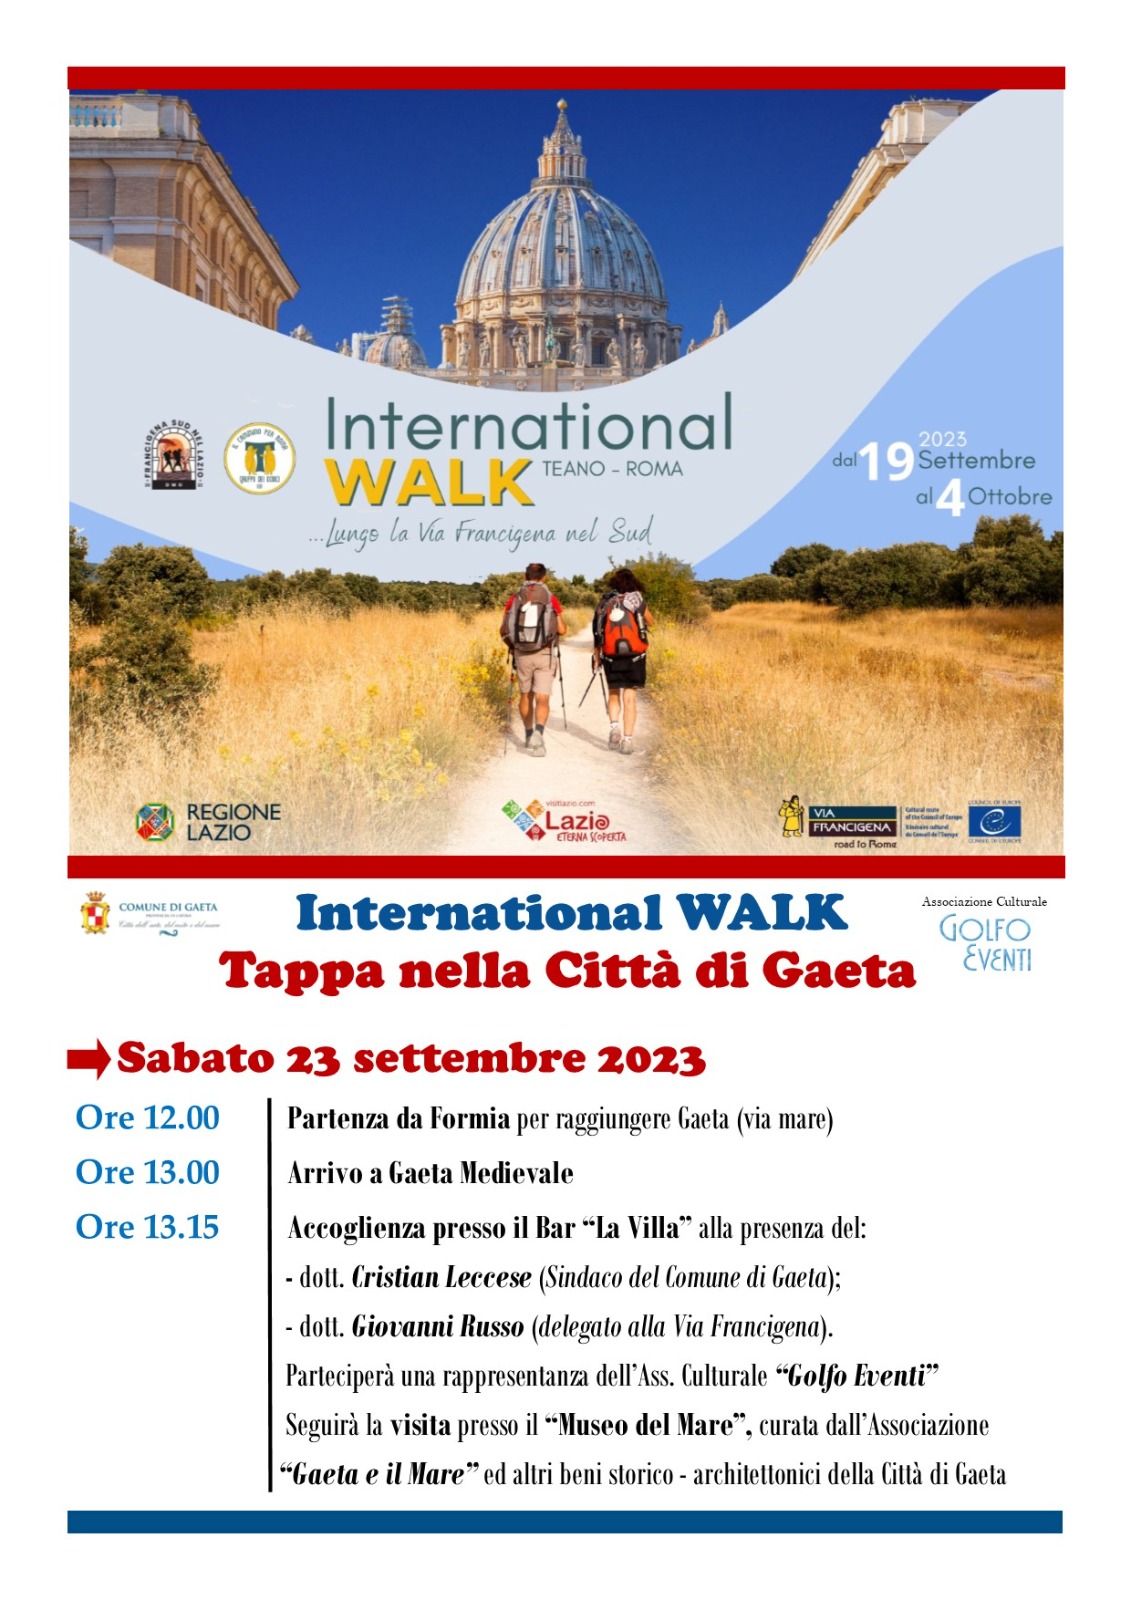 L'International Walk Teano-Roma approda a Gaeta: un incontro di pellegrini da tutto il mondo per scoprire la bellezza della via Francigena nel Sud